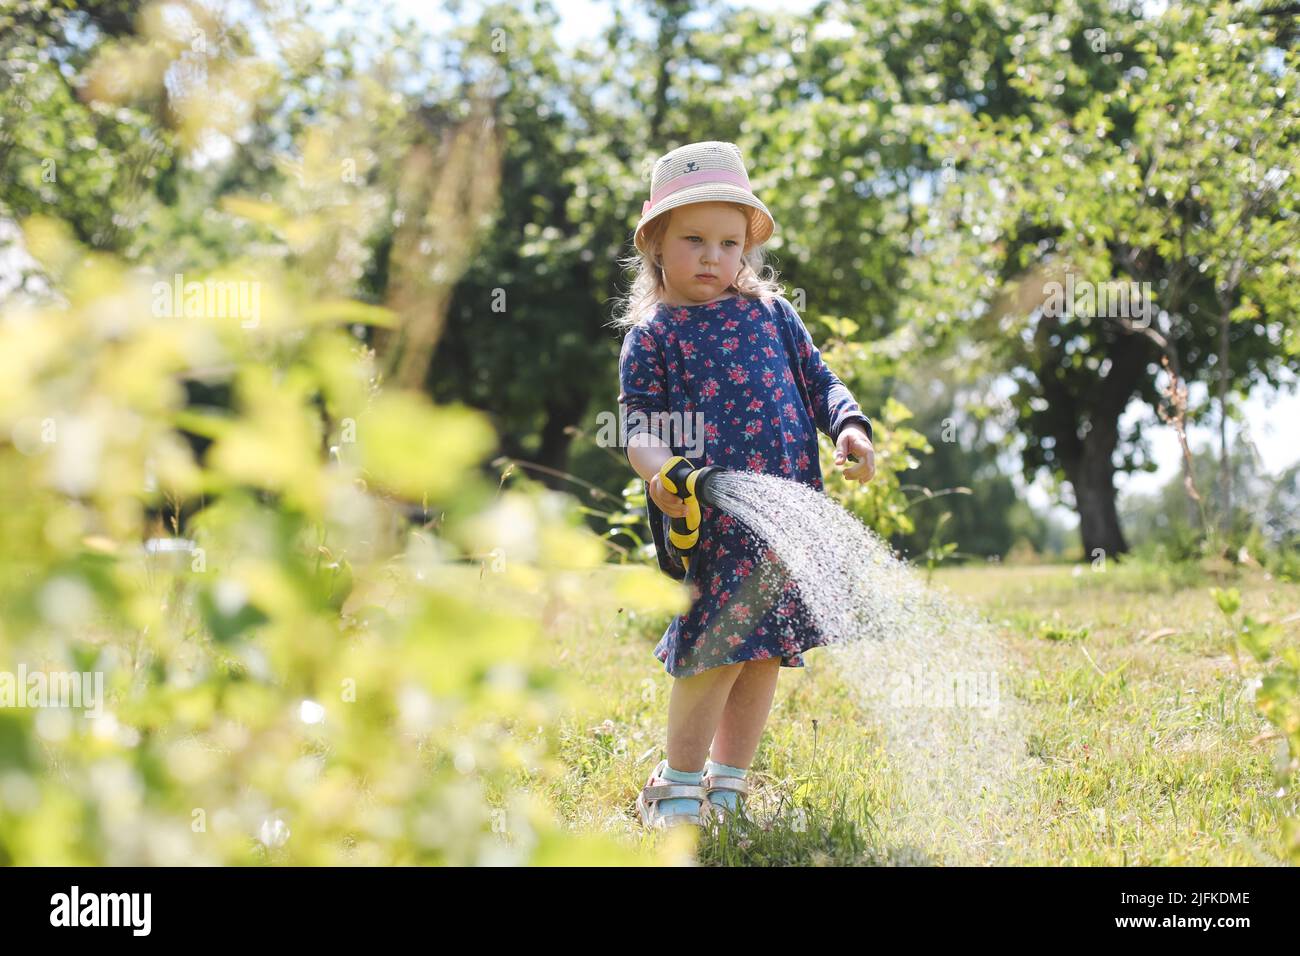 Adorabile bambina che gioca con una manichetta da giardino nella giornata estiva calda e soleggiata Foto Stock